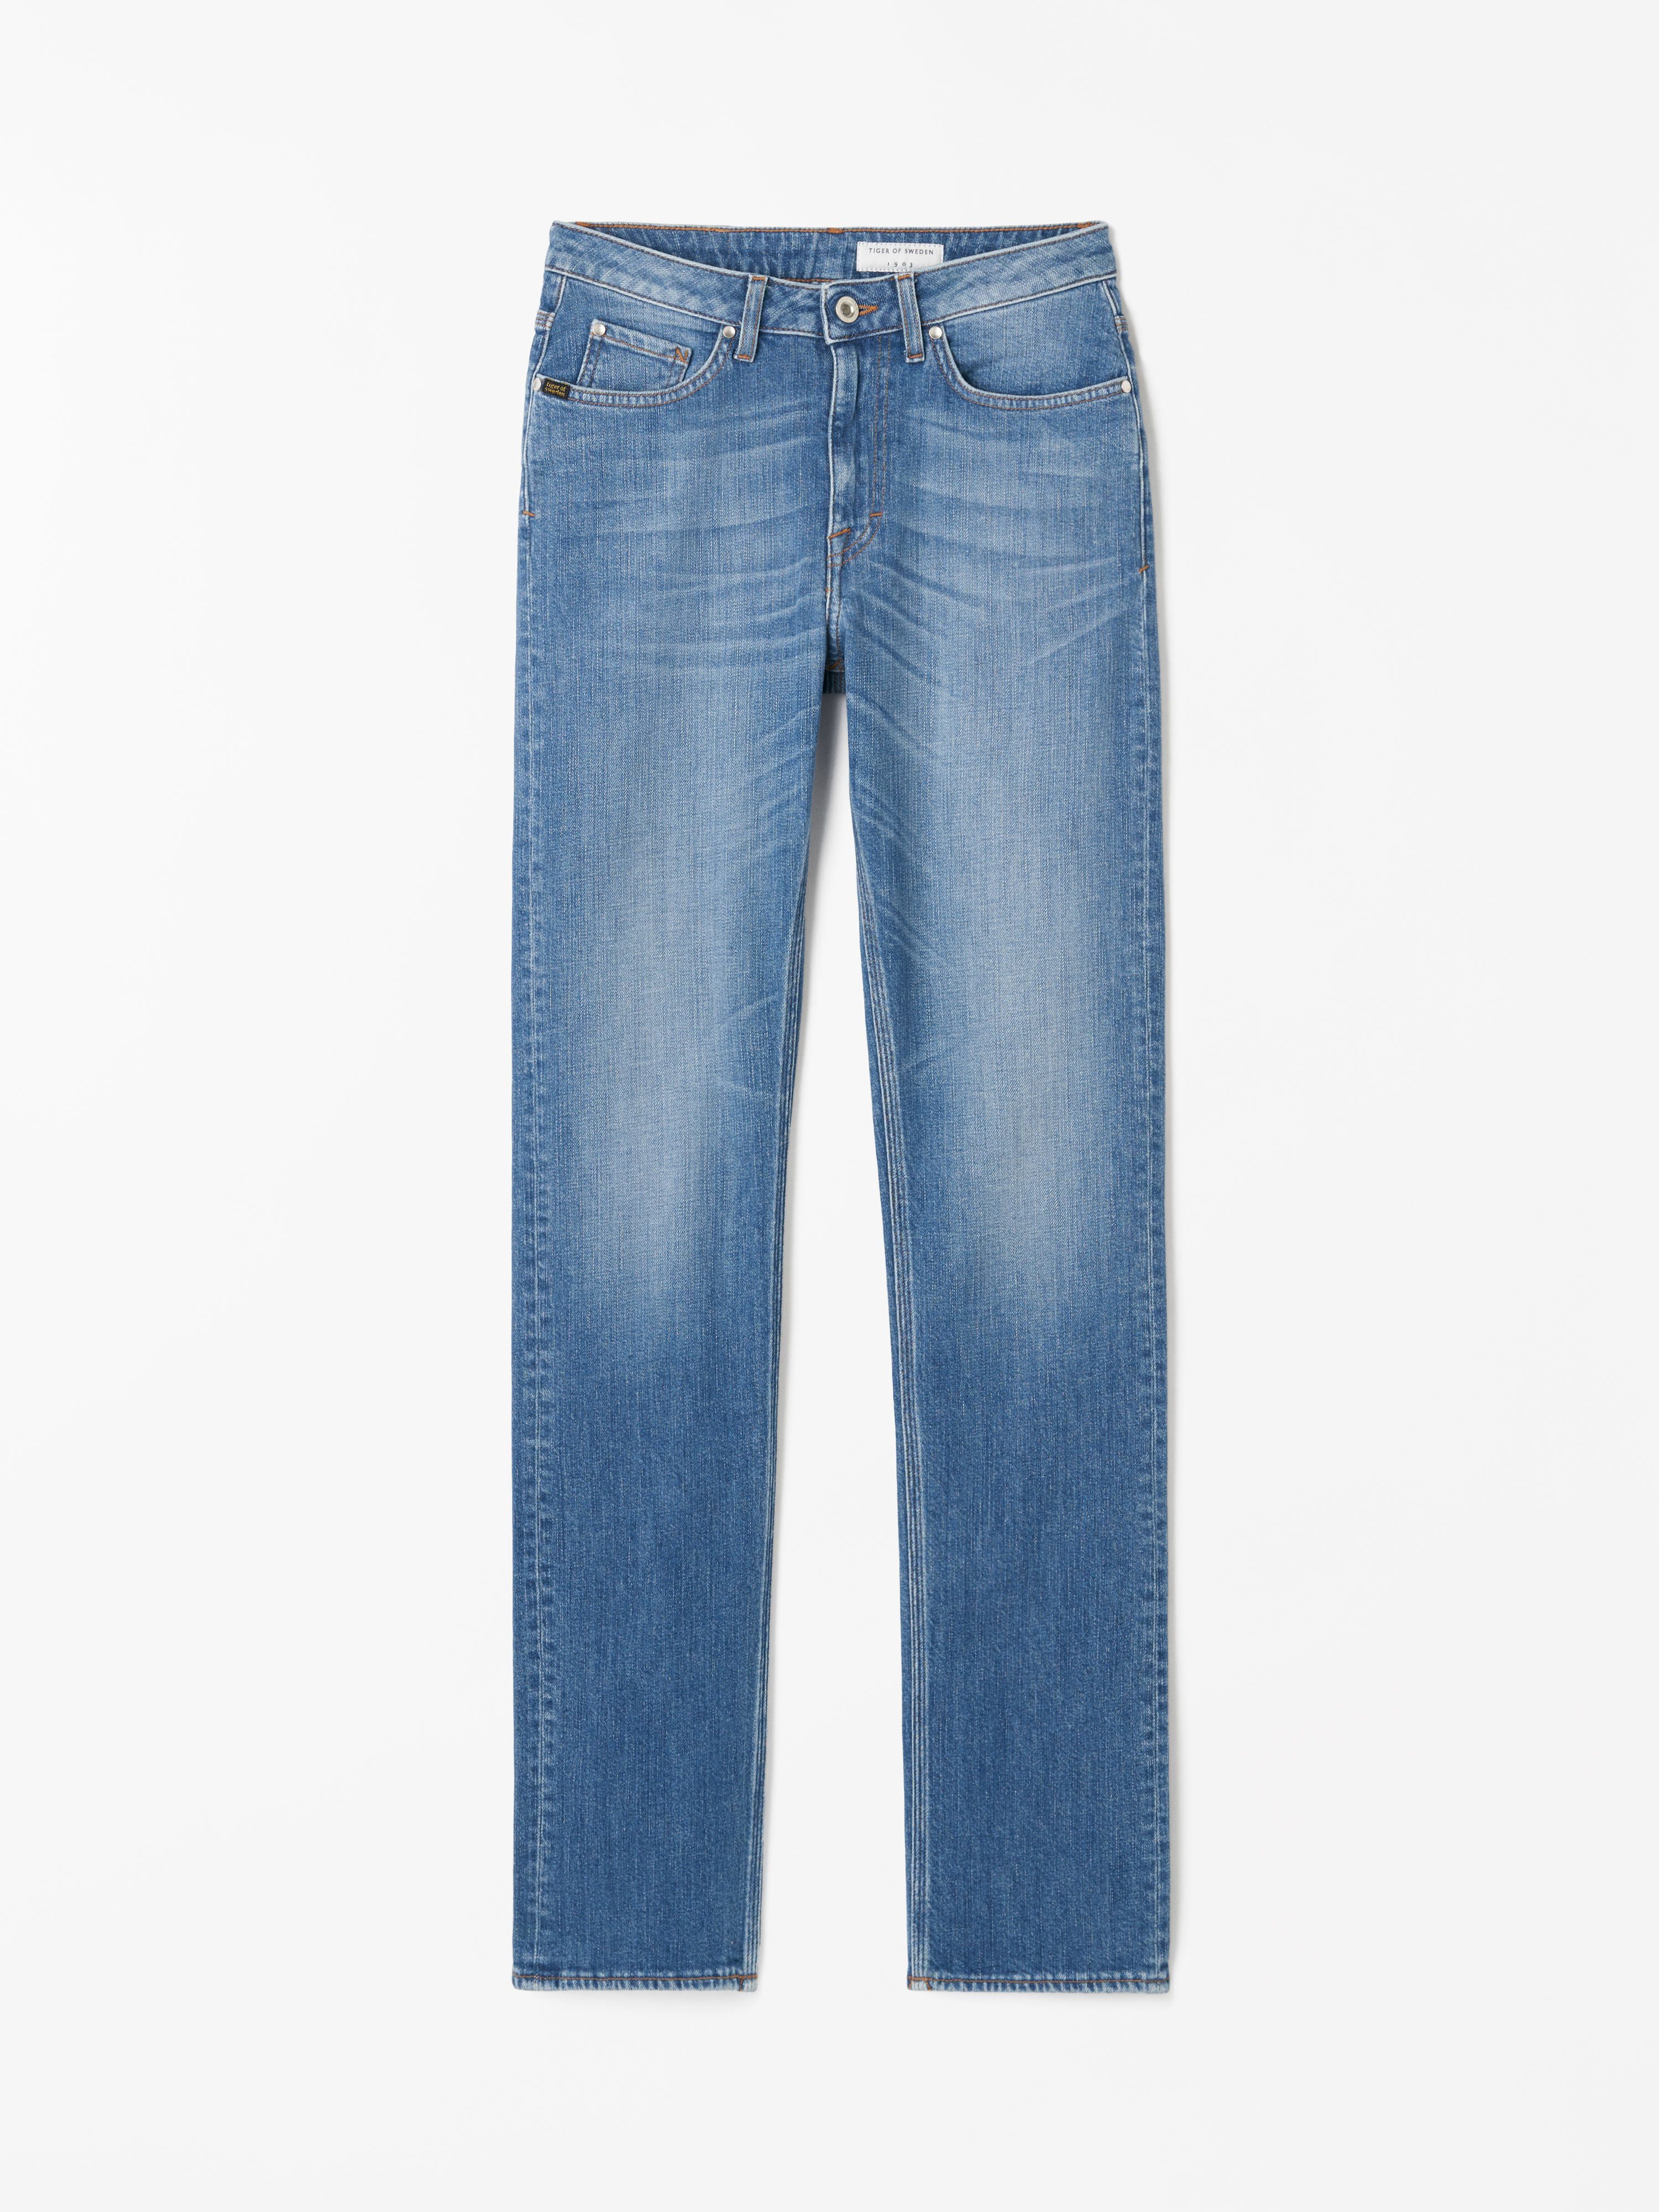 Women's jeans - Shop designer jeans online | Tiger of Sweden